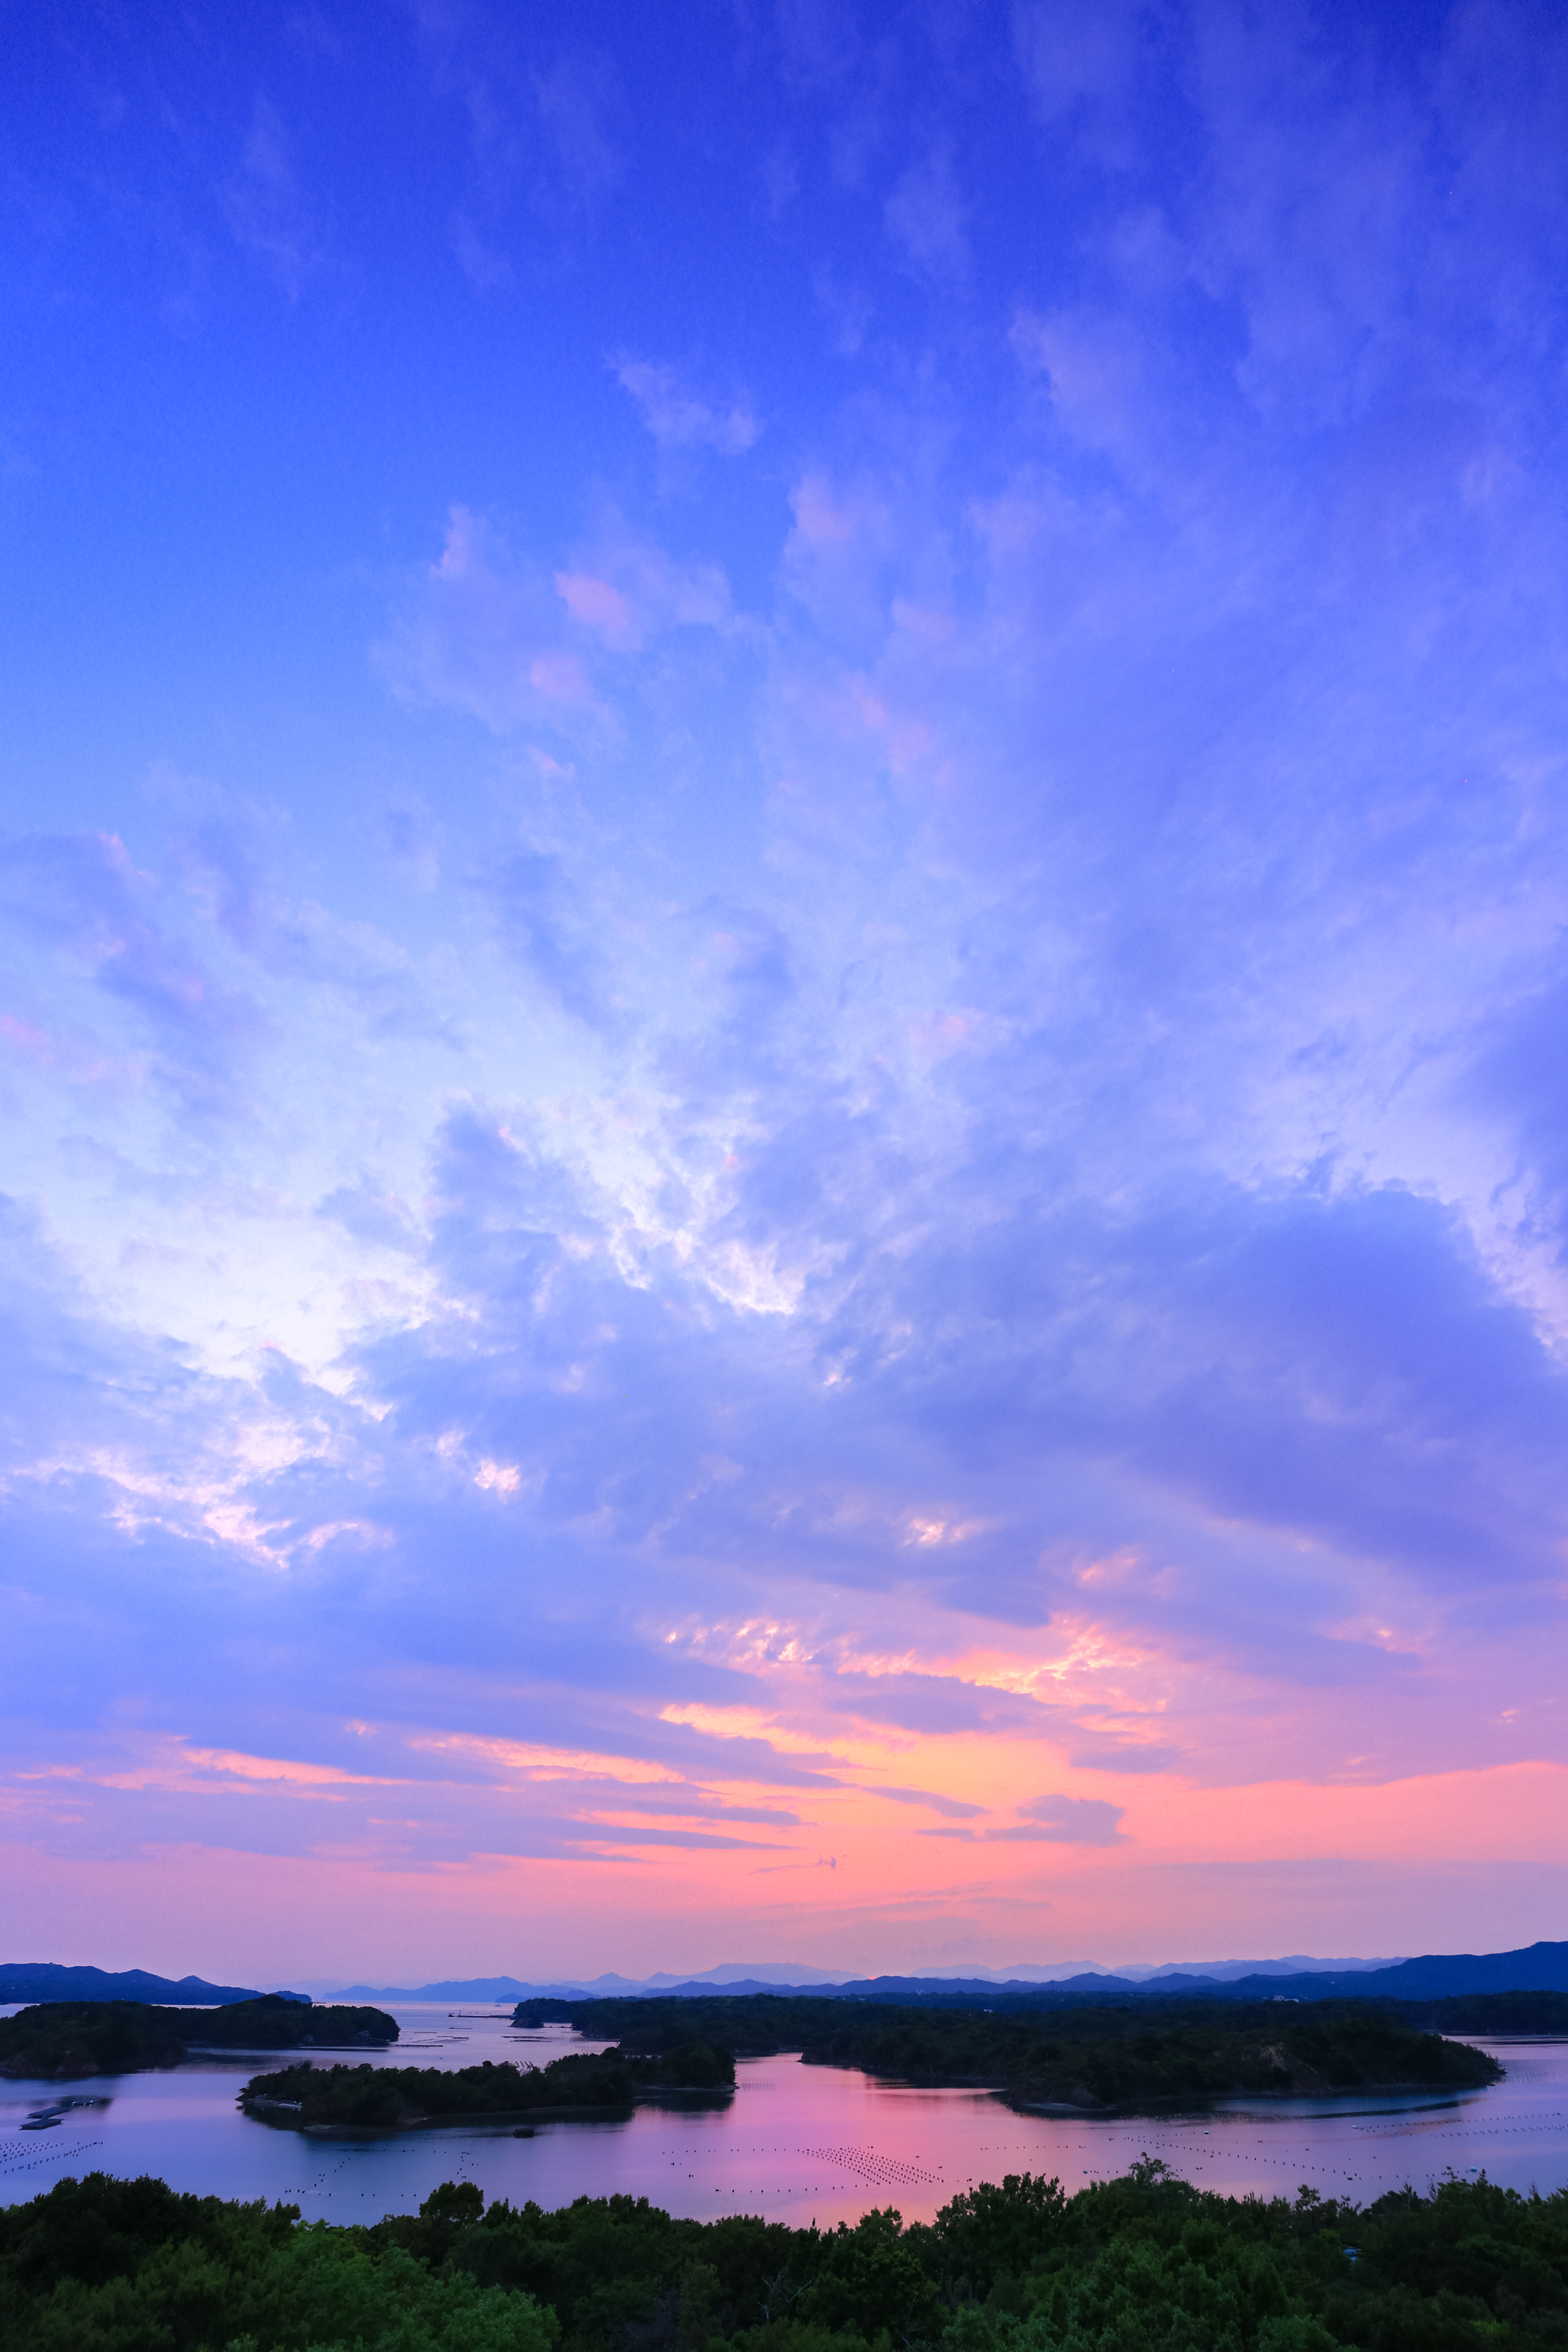 ともやま公園 桐垣展望台 の写真 夕焼けマジックアワー 無料の壁紙 写真なら三重フォトギャラリー